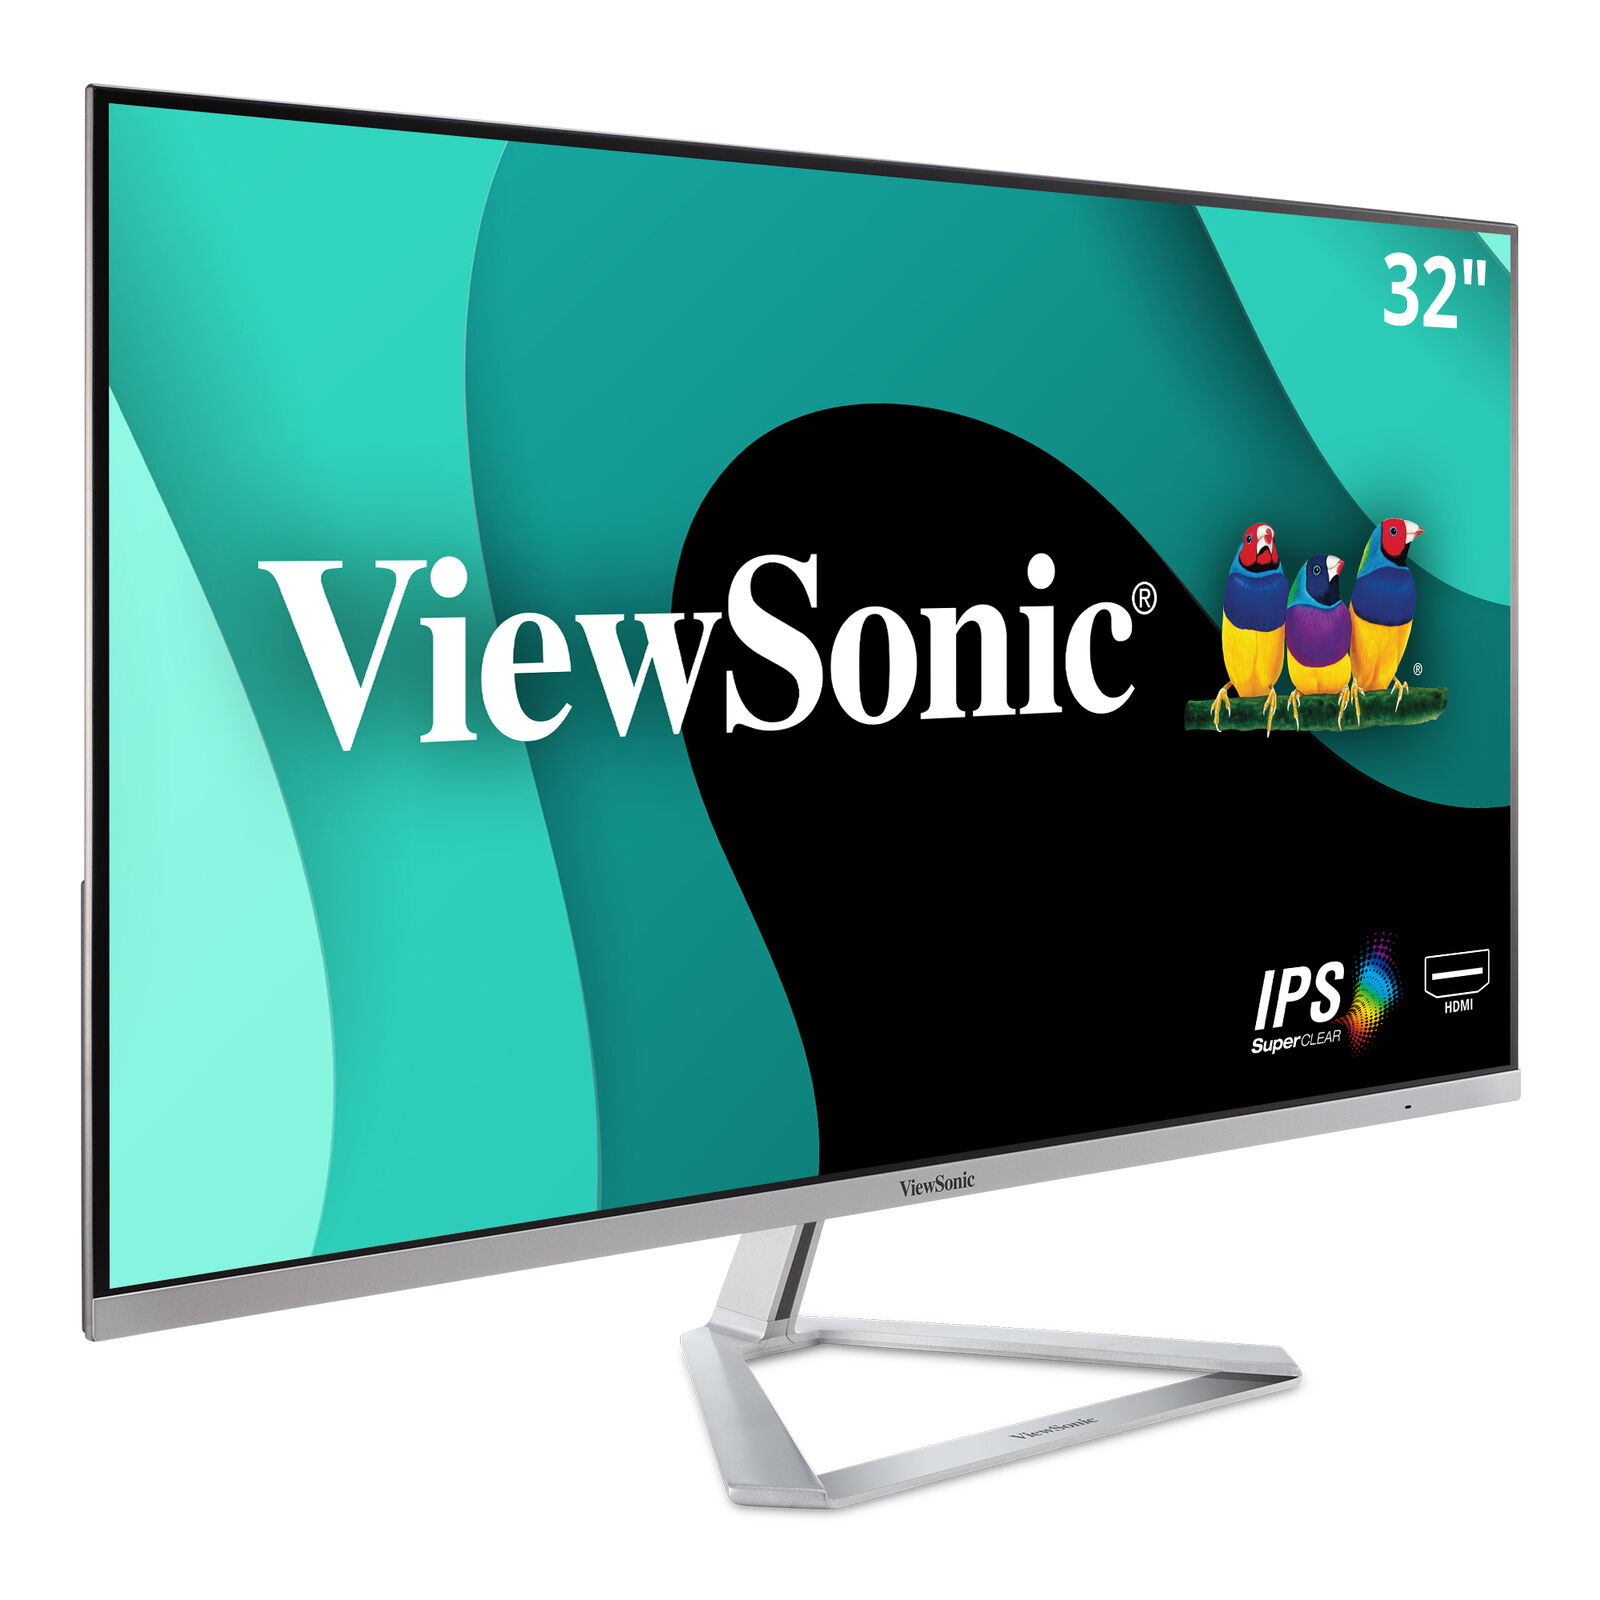 ViewSonic 1080p IPS Monitor VX3276-MHD 32